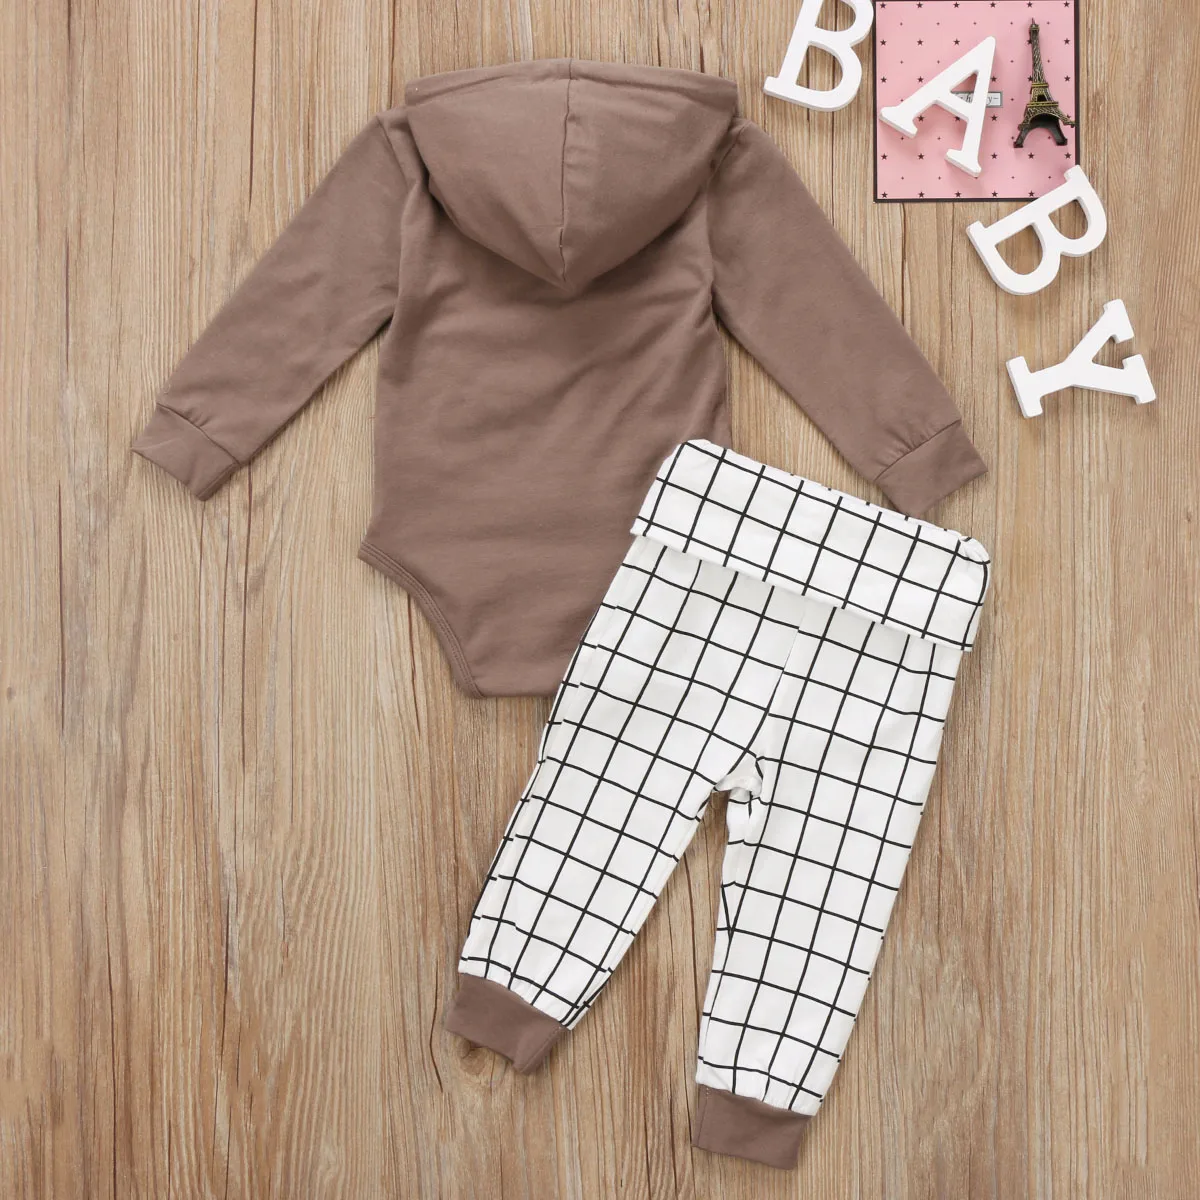 Новорожденных Для маленьких мальчиков толстовка с капюшоном боди+ Пледы Брюки для девочек наряды одежда для малышей 0-18 м Костюмы комплект